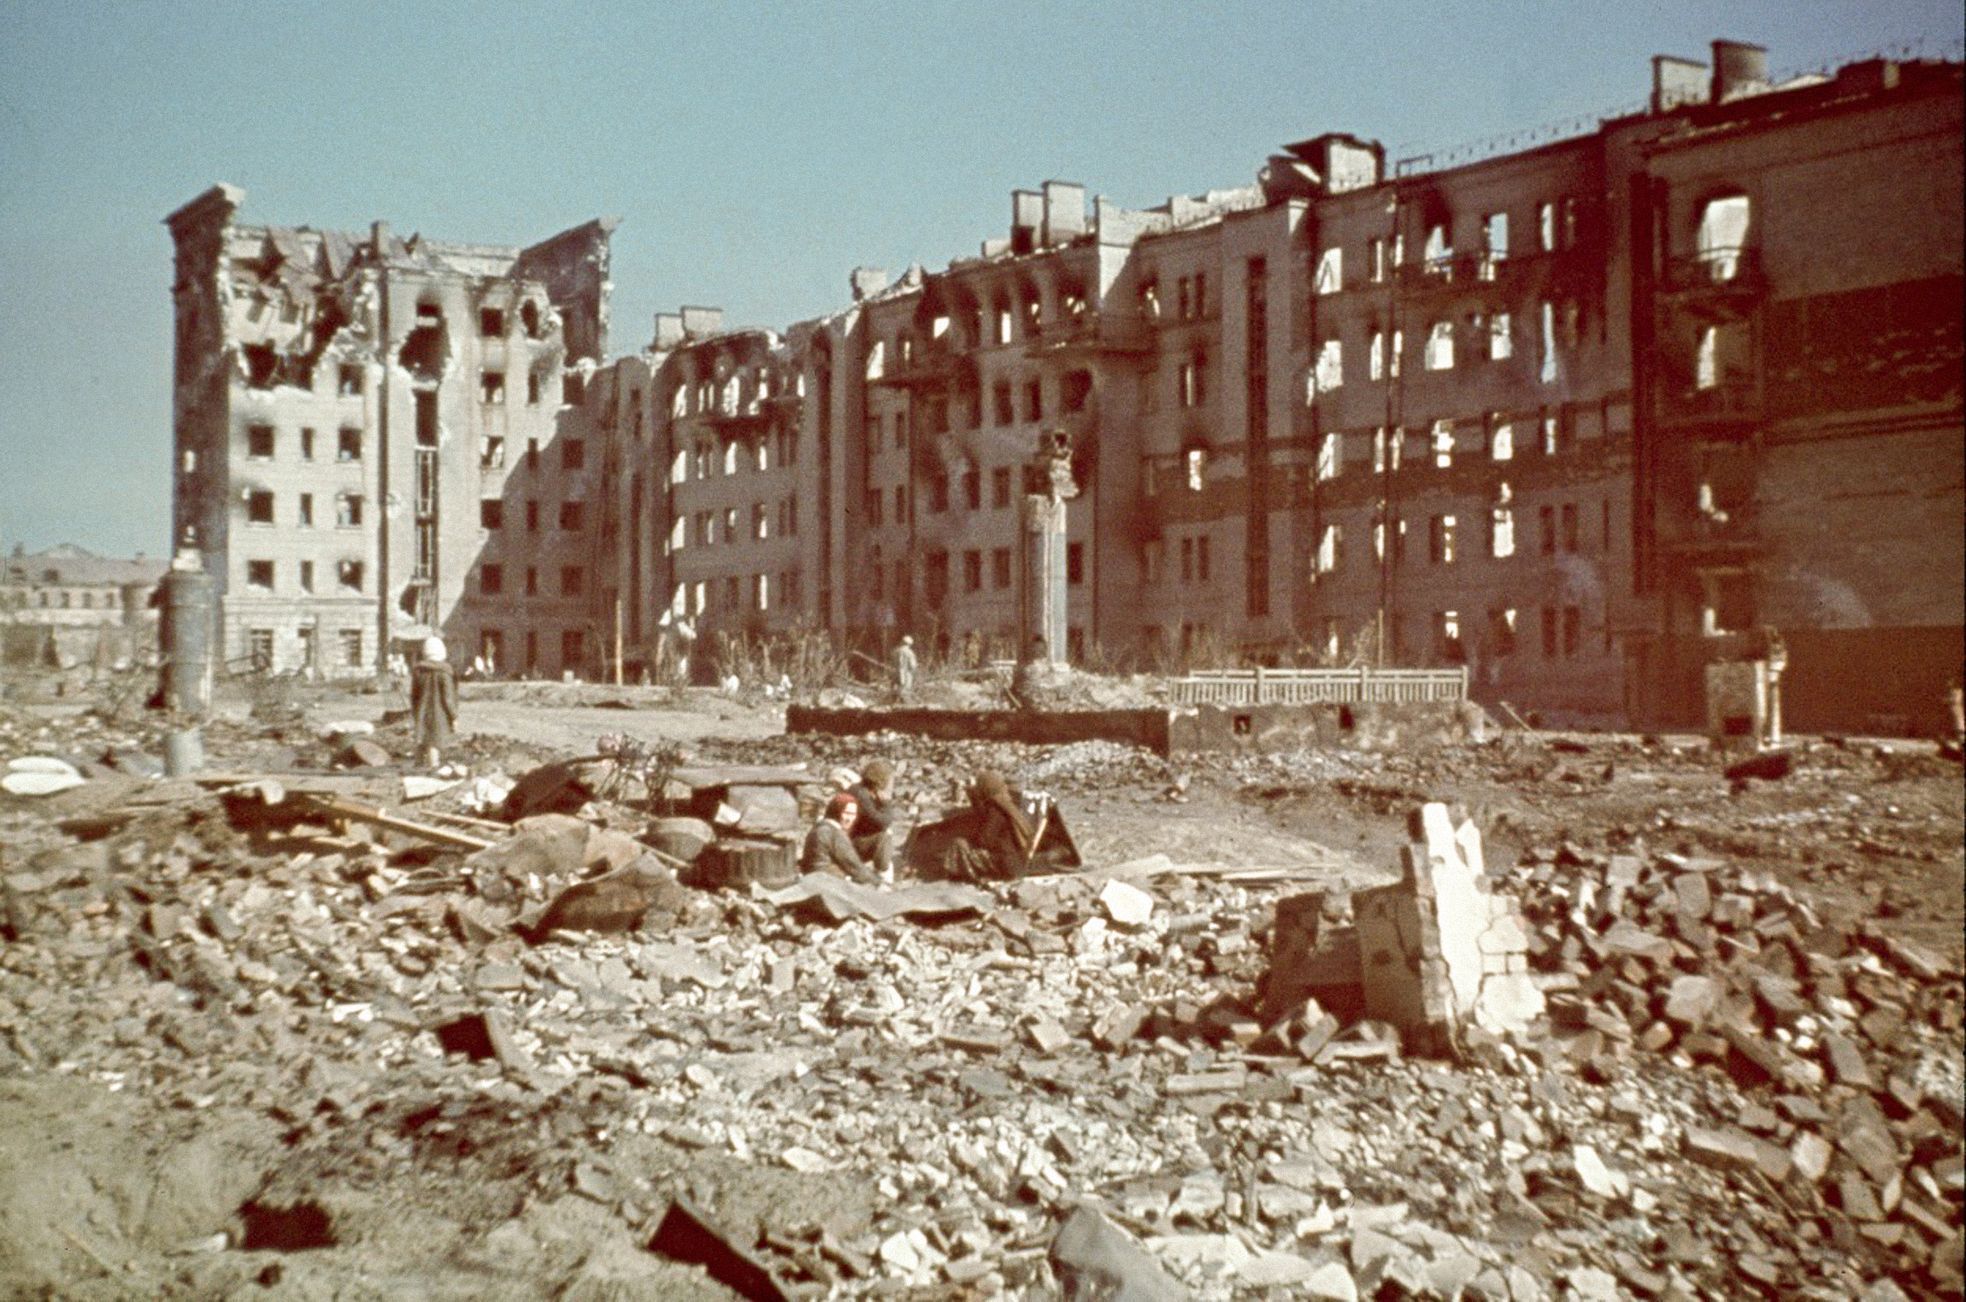 Stalingrad, bitva, Německo, Sovětský svaz, SSSR, 2. světová válka, barva, výročí, 80. let